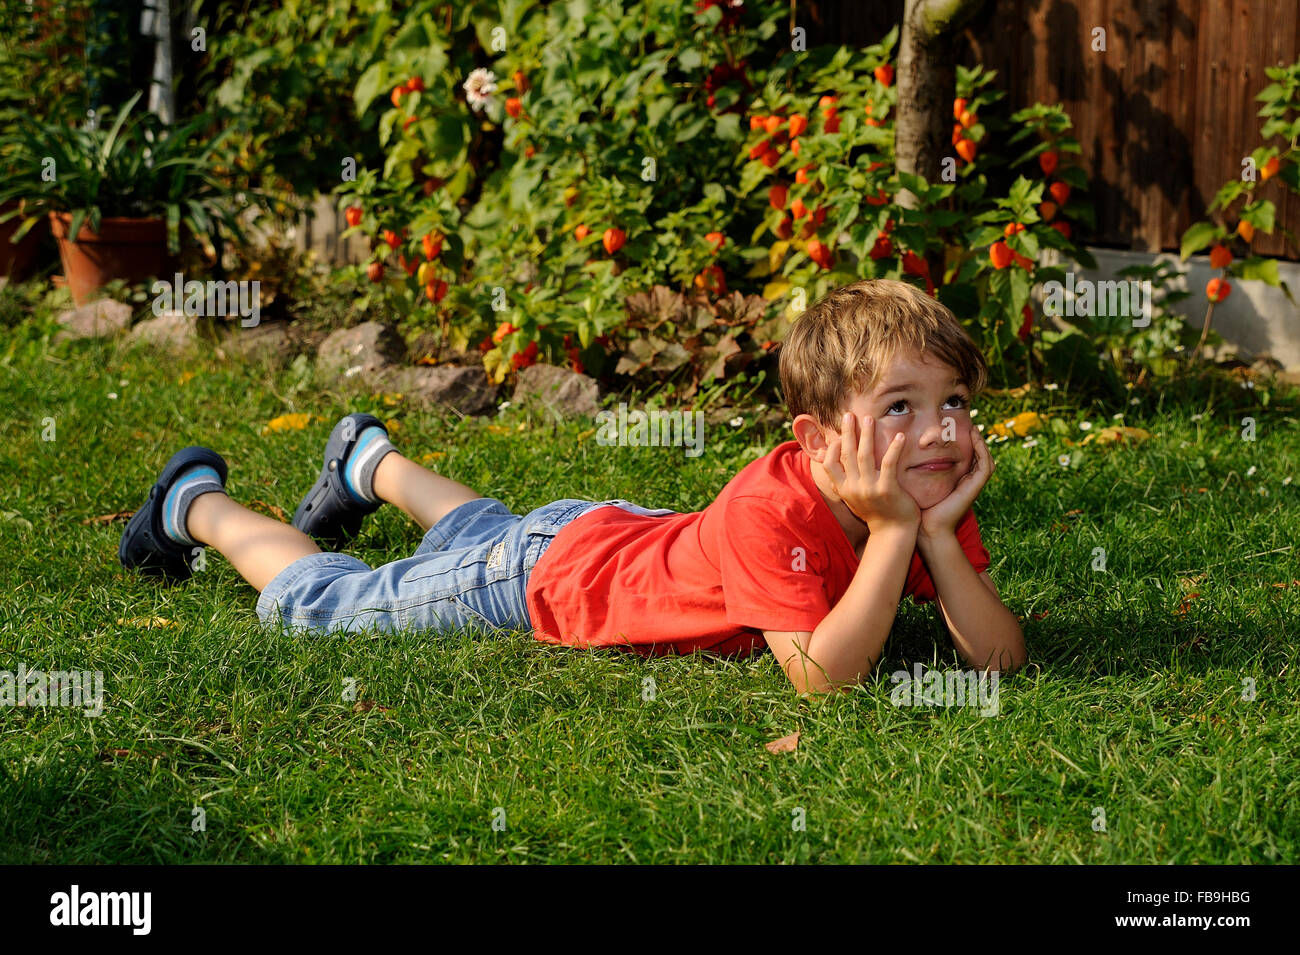 Junge liegend auf dem Rasen, ruhen Kopf in Händen, nachdenklichen Blick Stockfoto